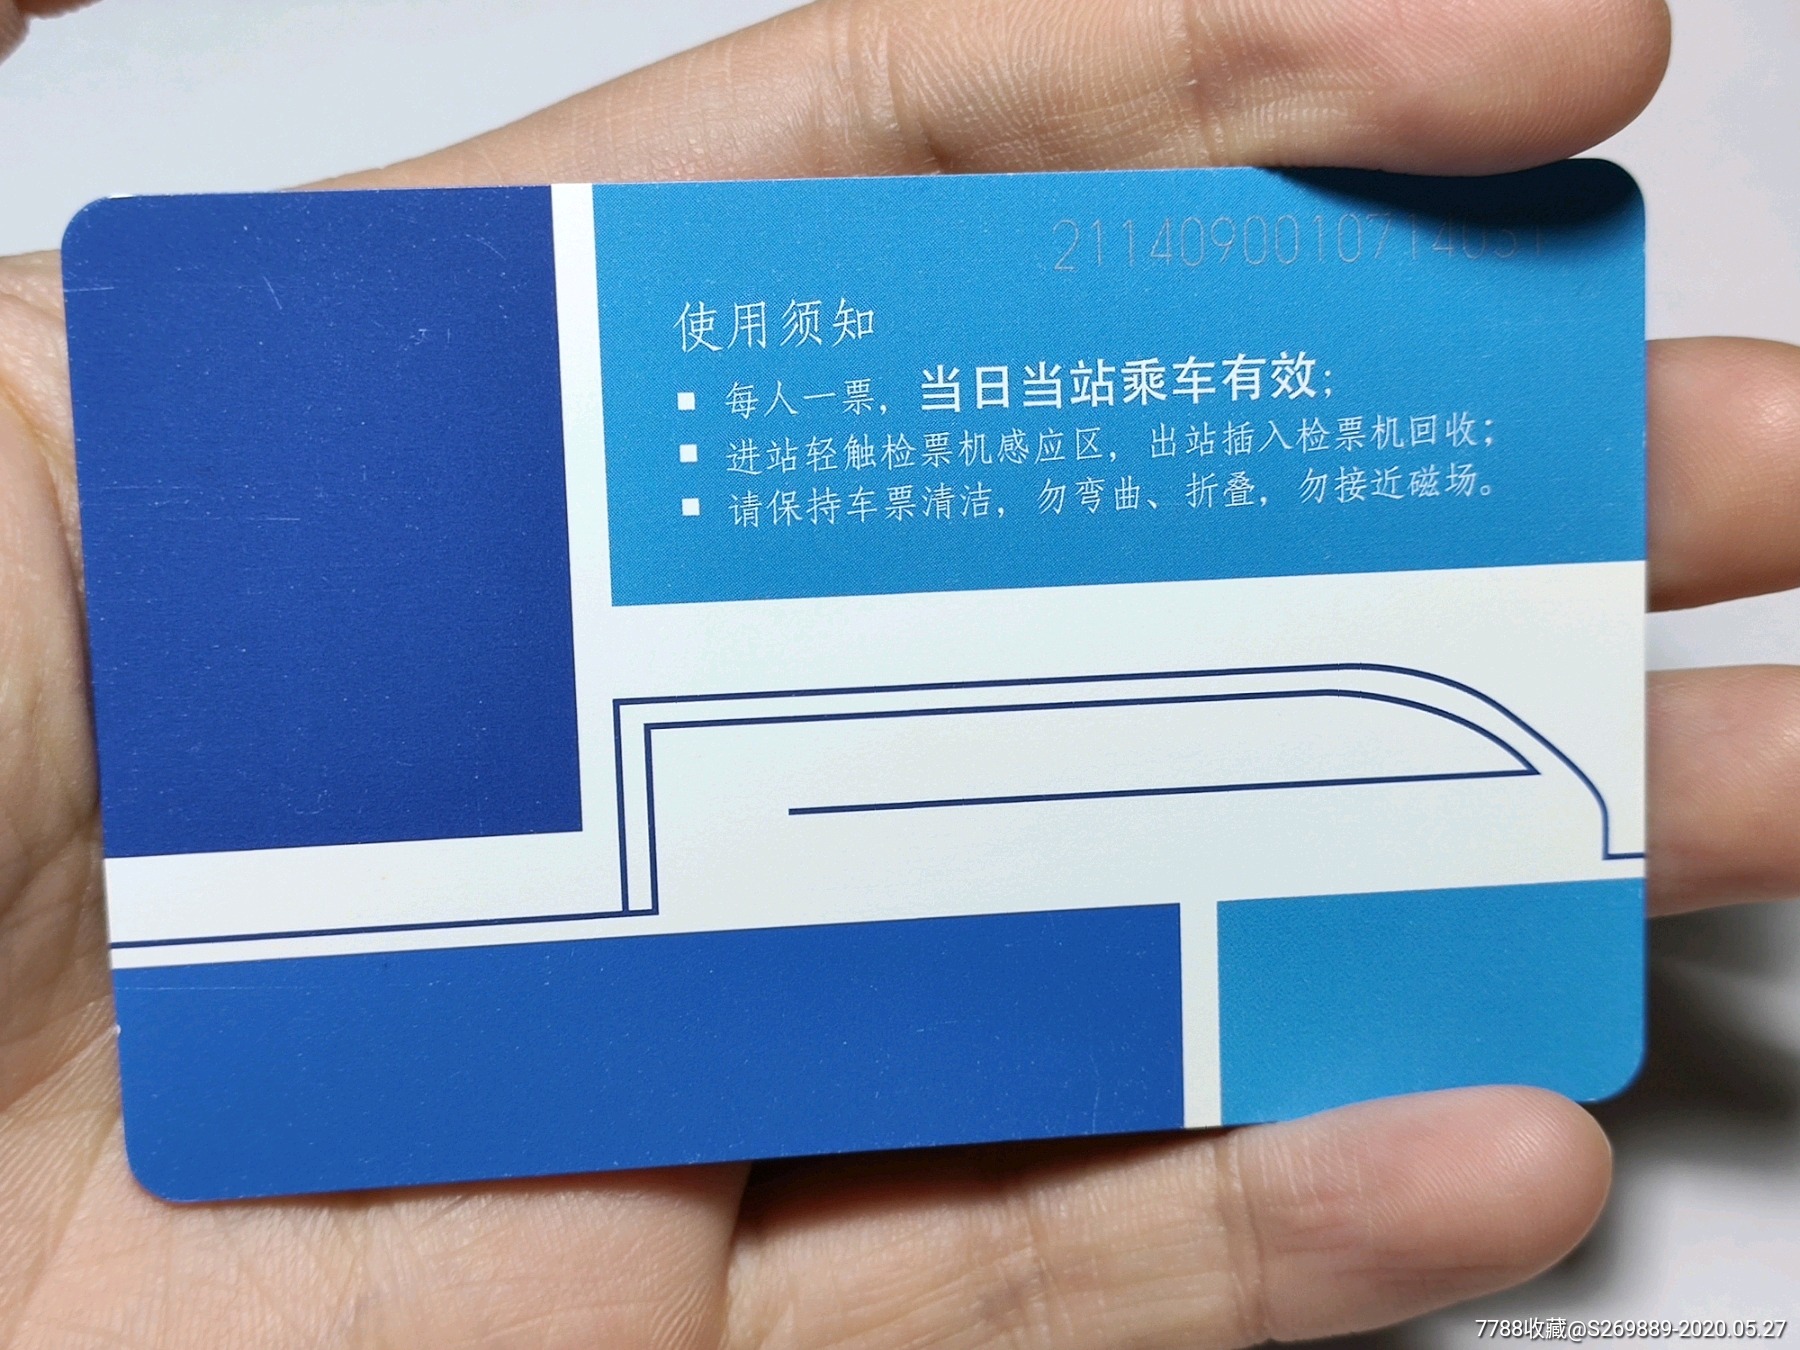 郑州地铁蓝色单程票第一版(没有二维码)